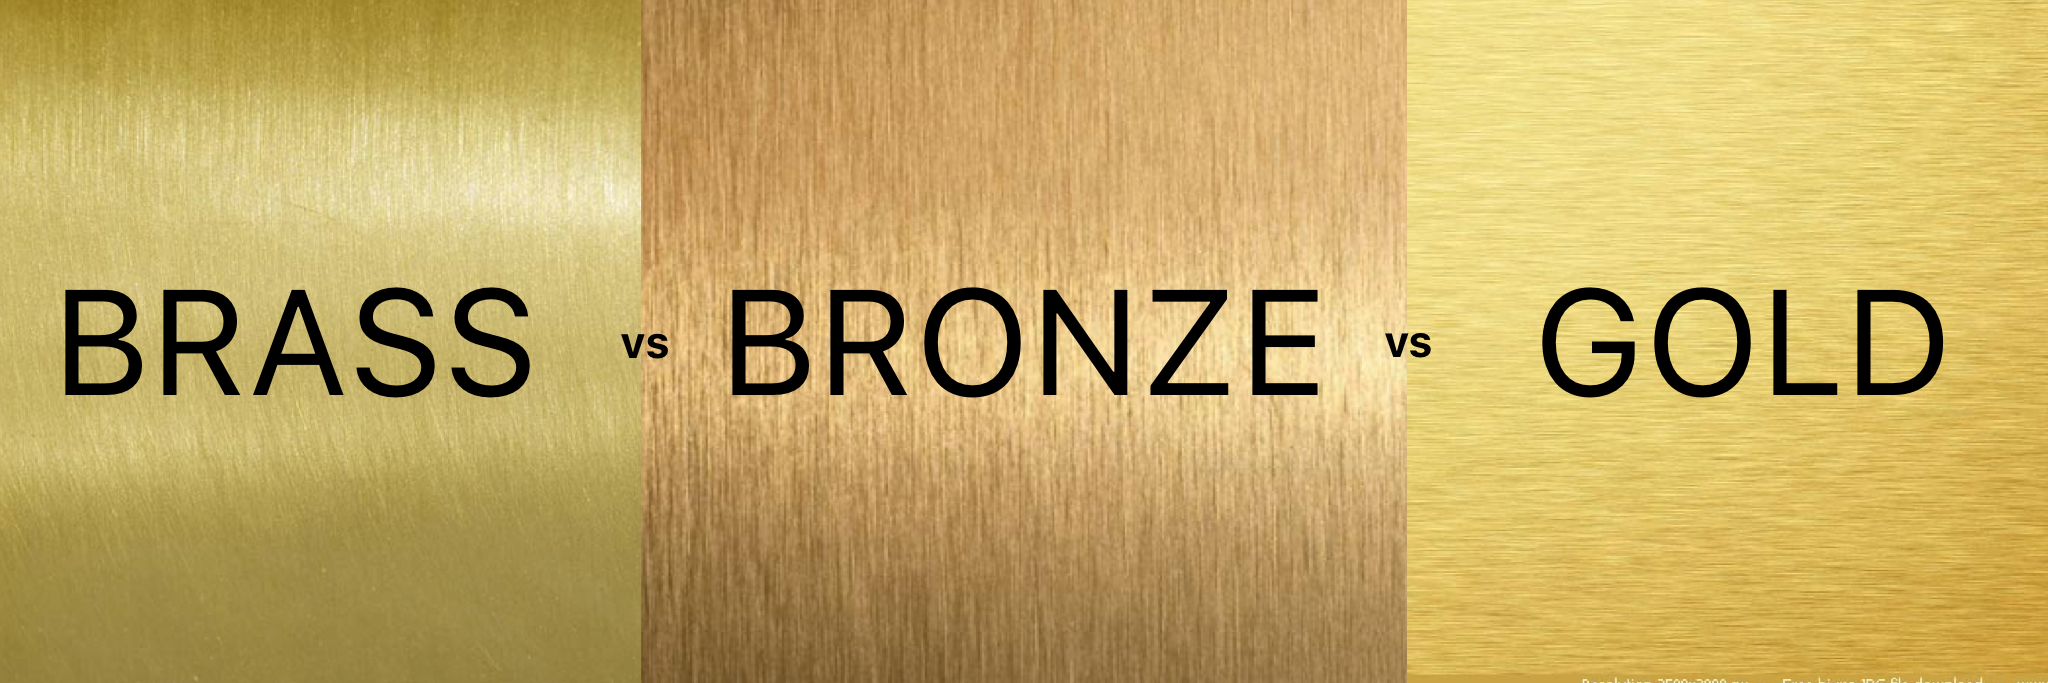 Matematisk gavnlig jeg er tørstig Brass vs Bronze vs Gold by Albie Knows Interior Design + Content Creation